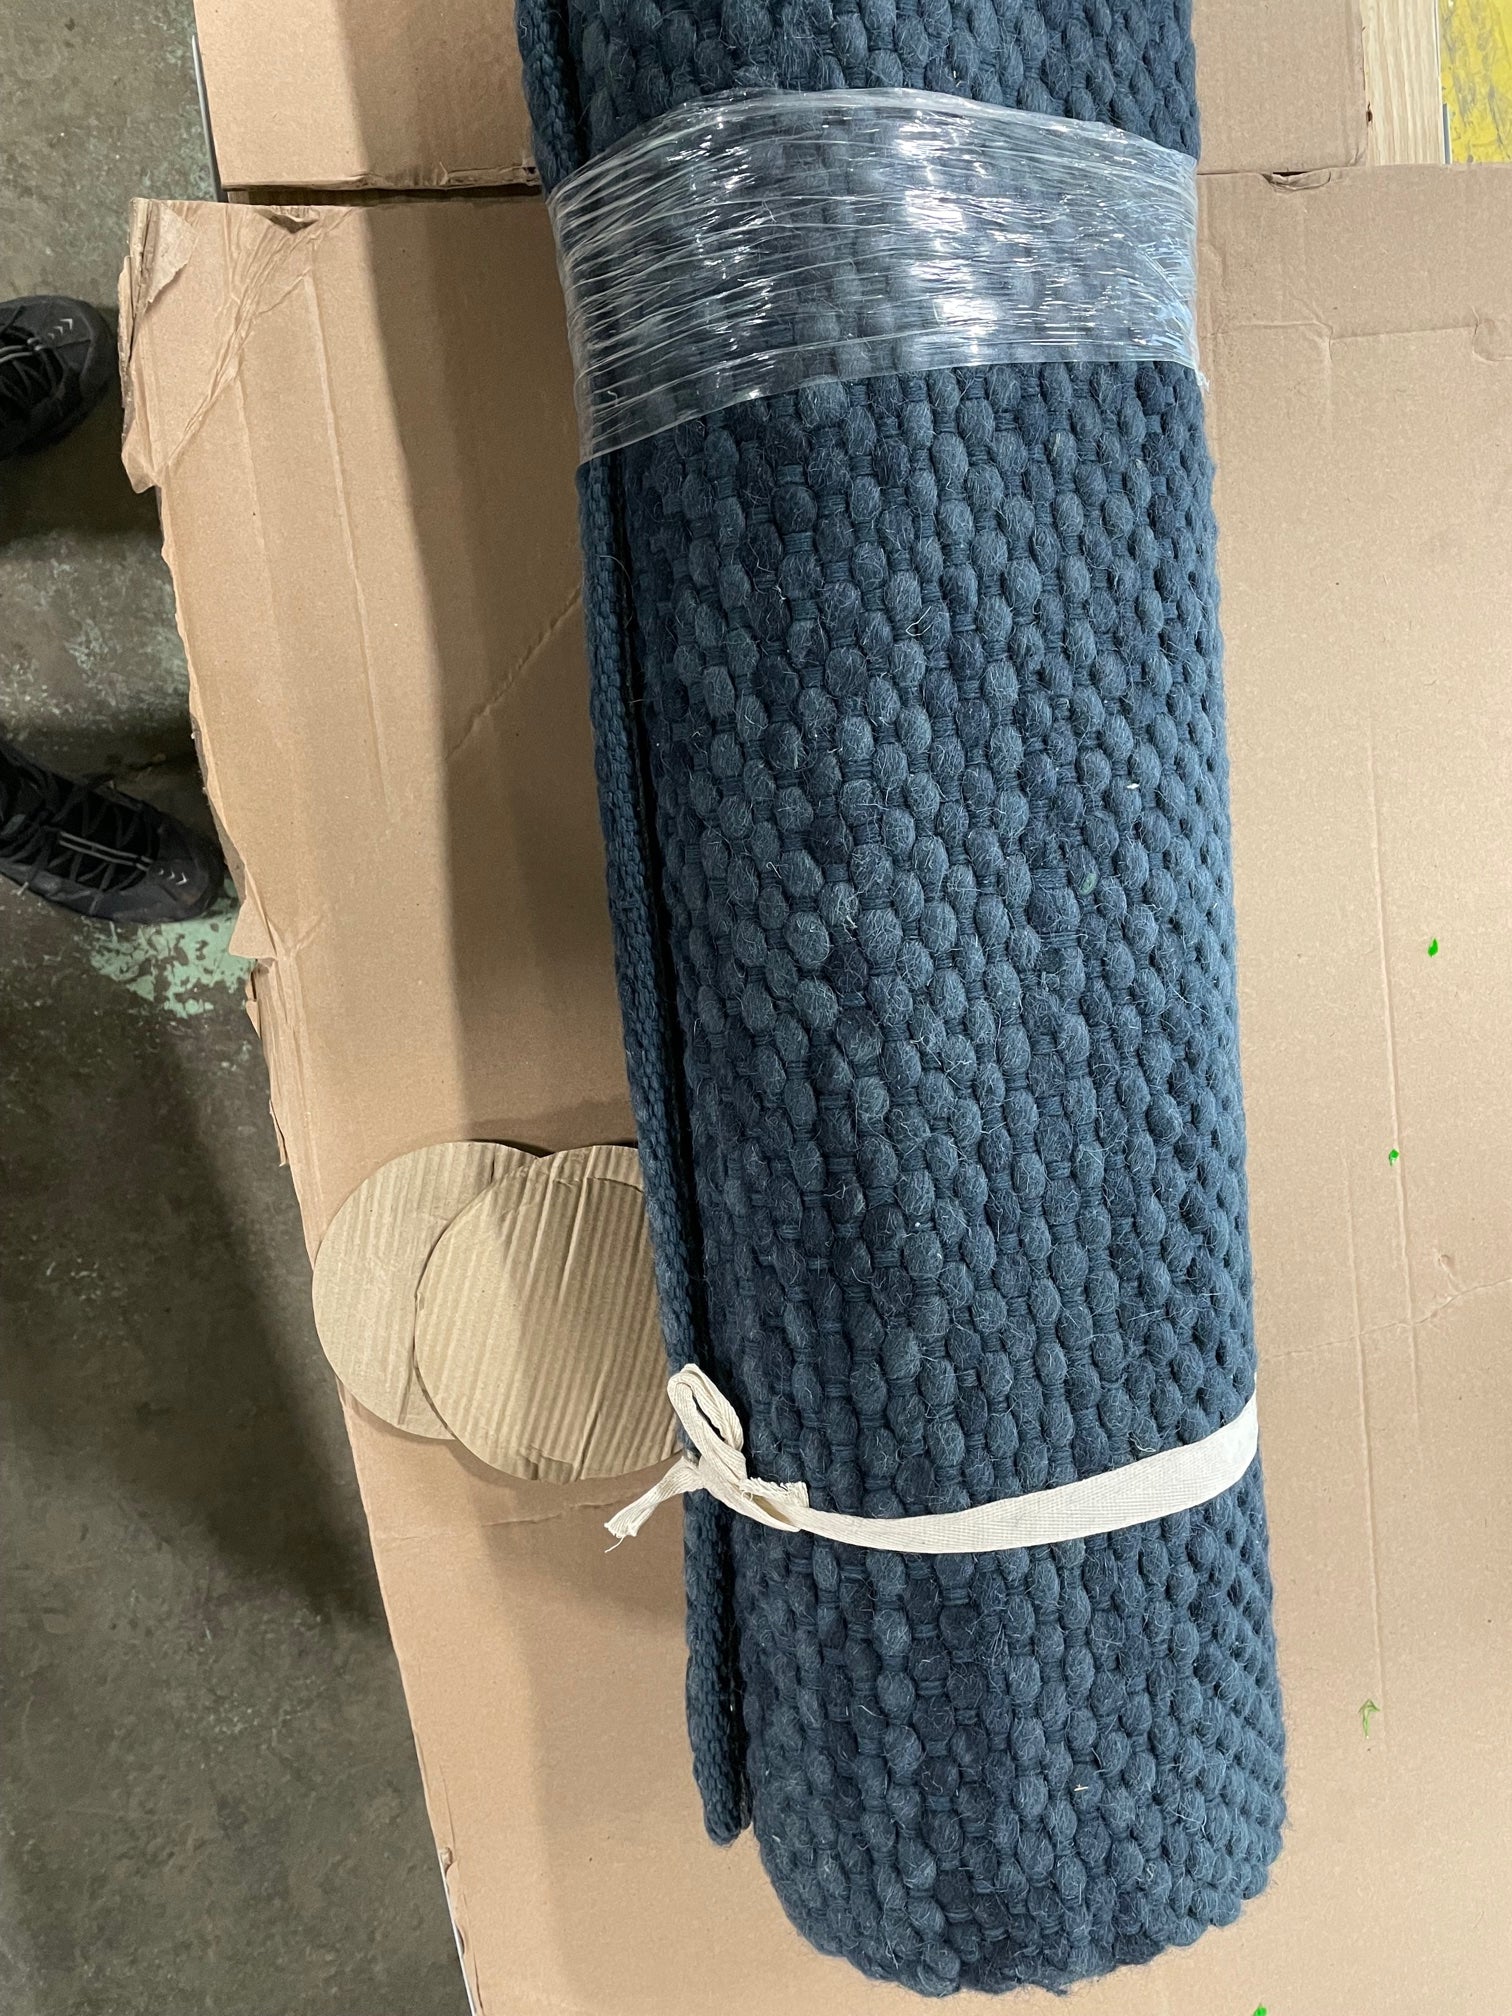 7' x 10' Woven Area Rug (indigo blue)